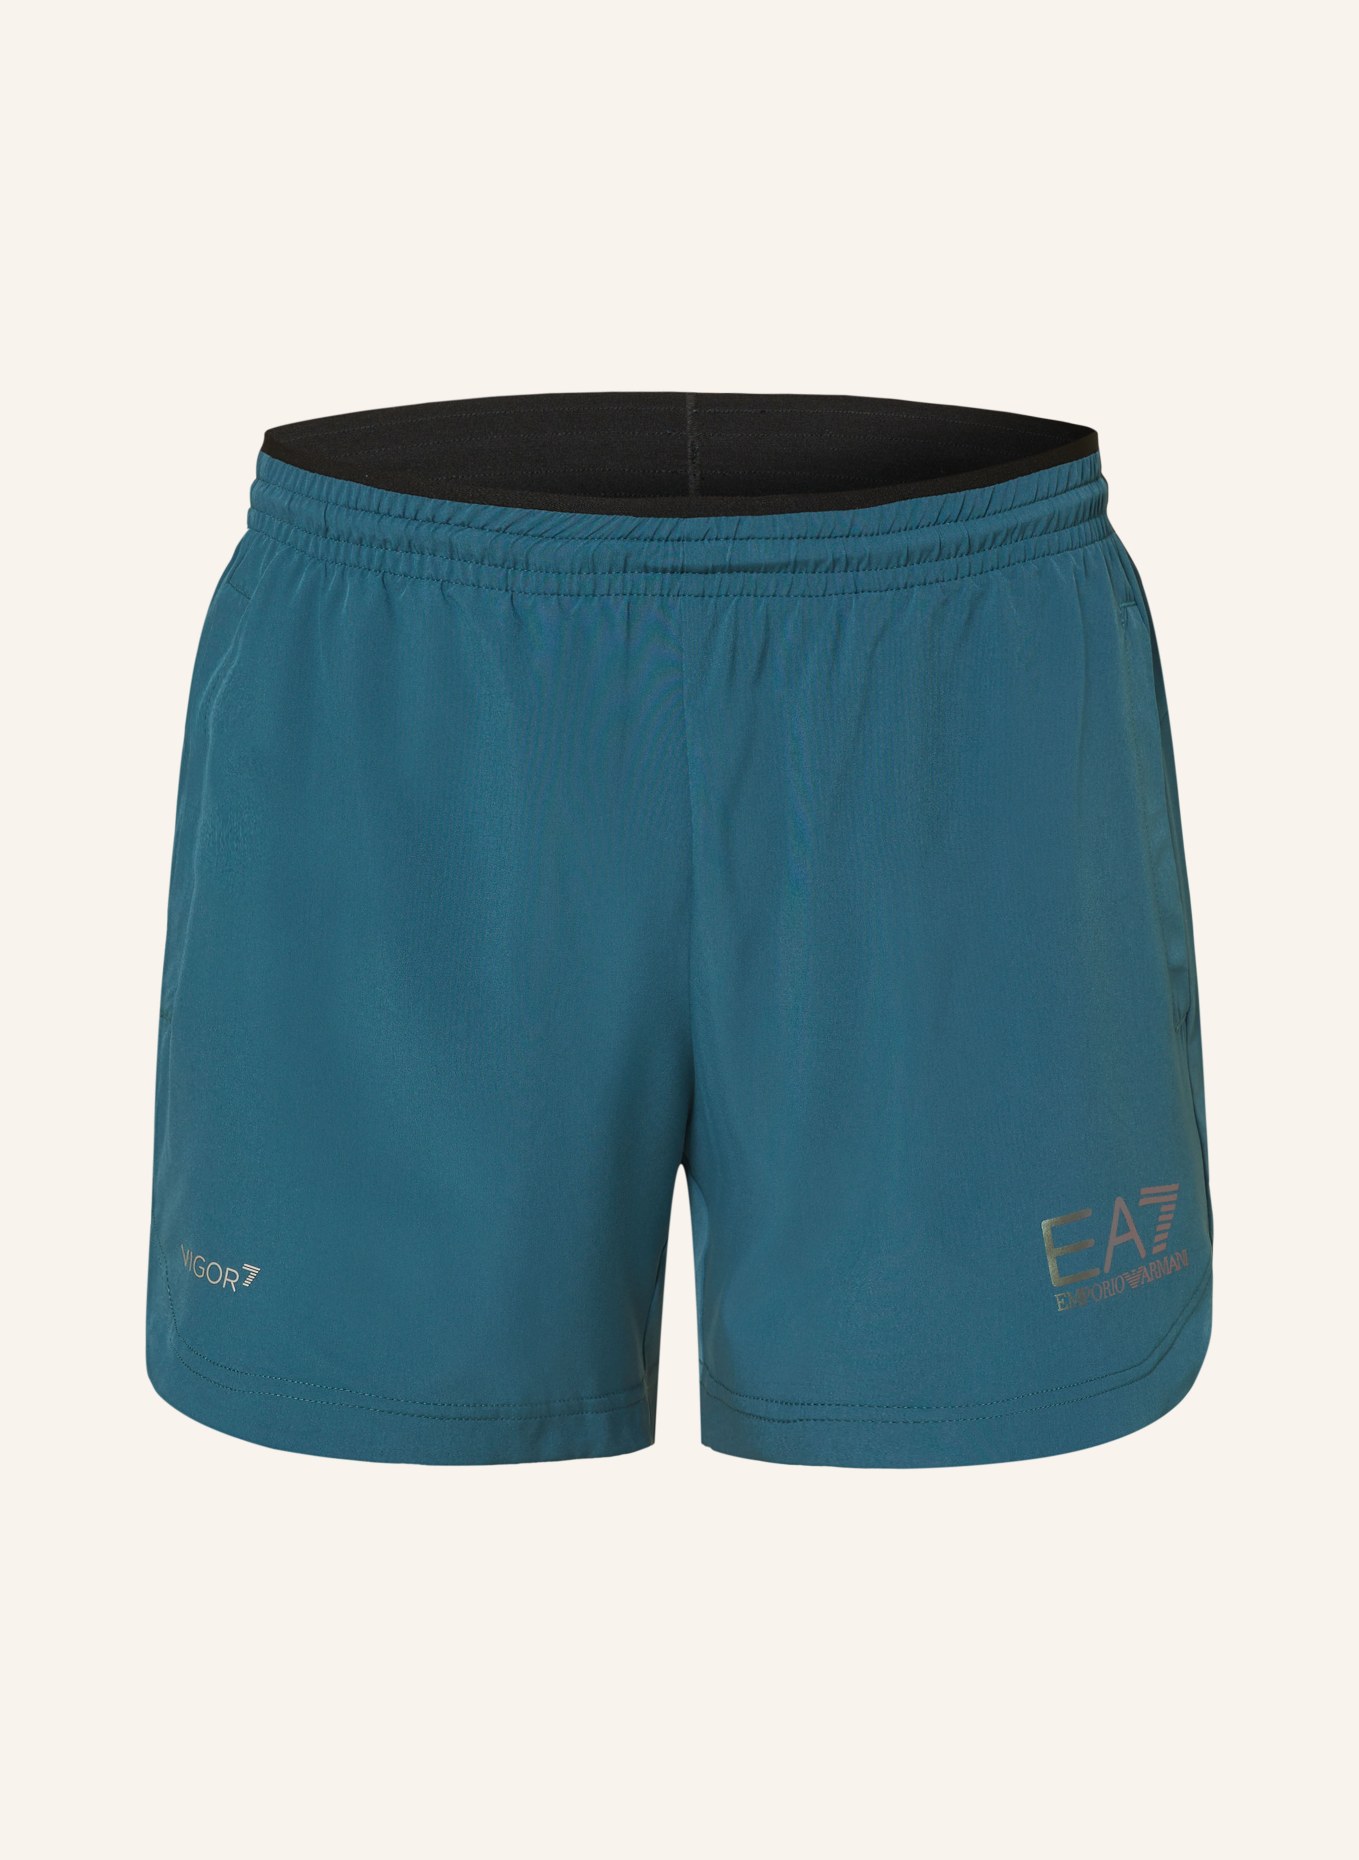 EA7 EMPORIO ARMANI Tennis shorts, Color: TEAL (Image 1)